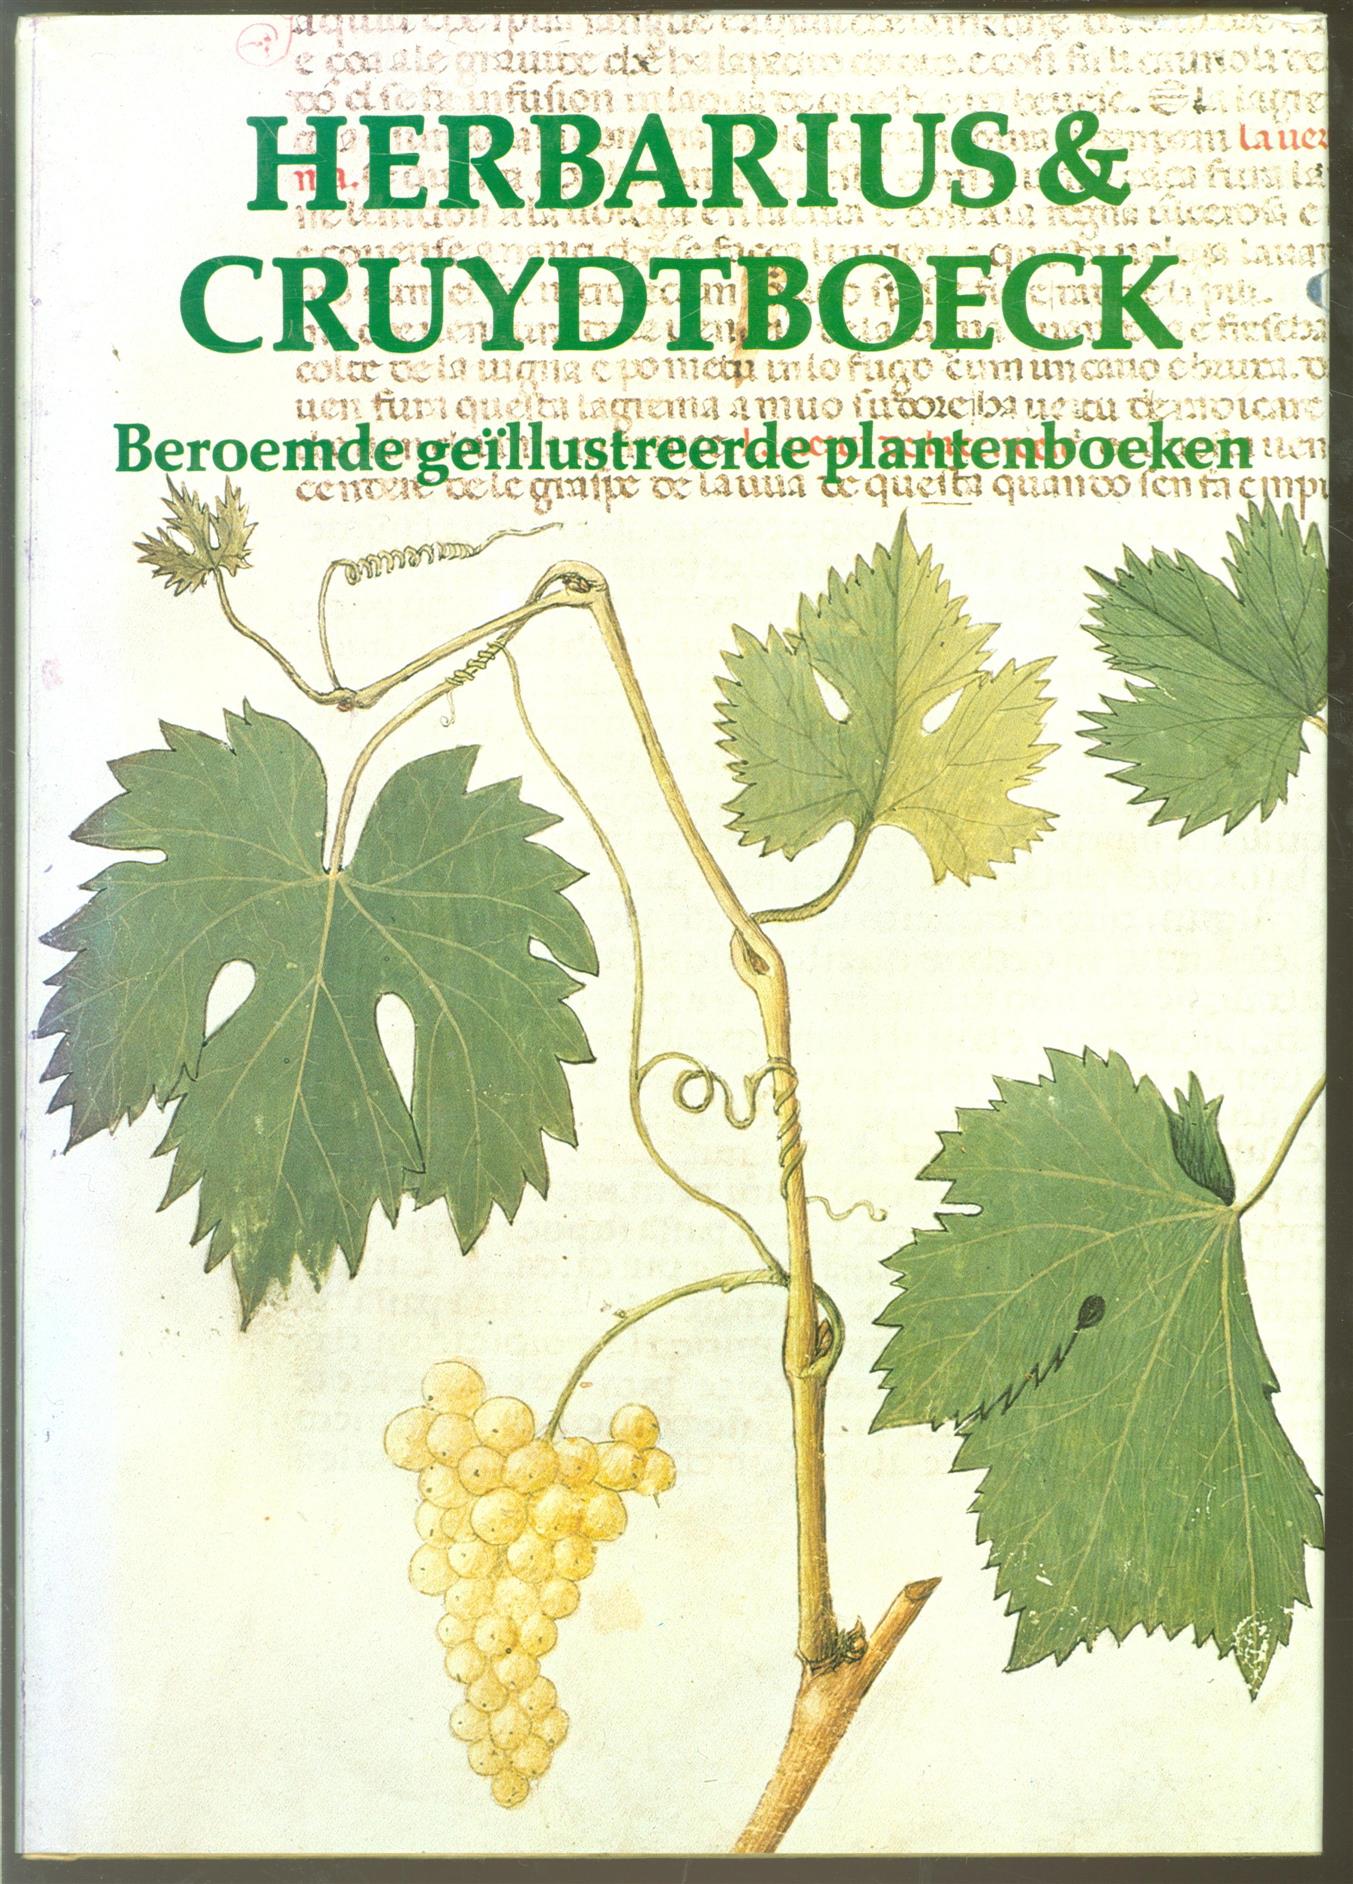 Blunt, Wilfrid, Raphael, Sandra - Herbarius & cruydtboeck: beroemde gellustreerde plantenboeken